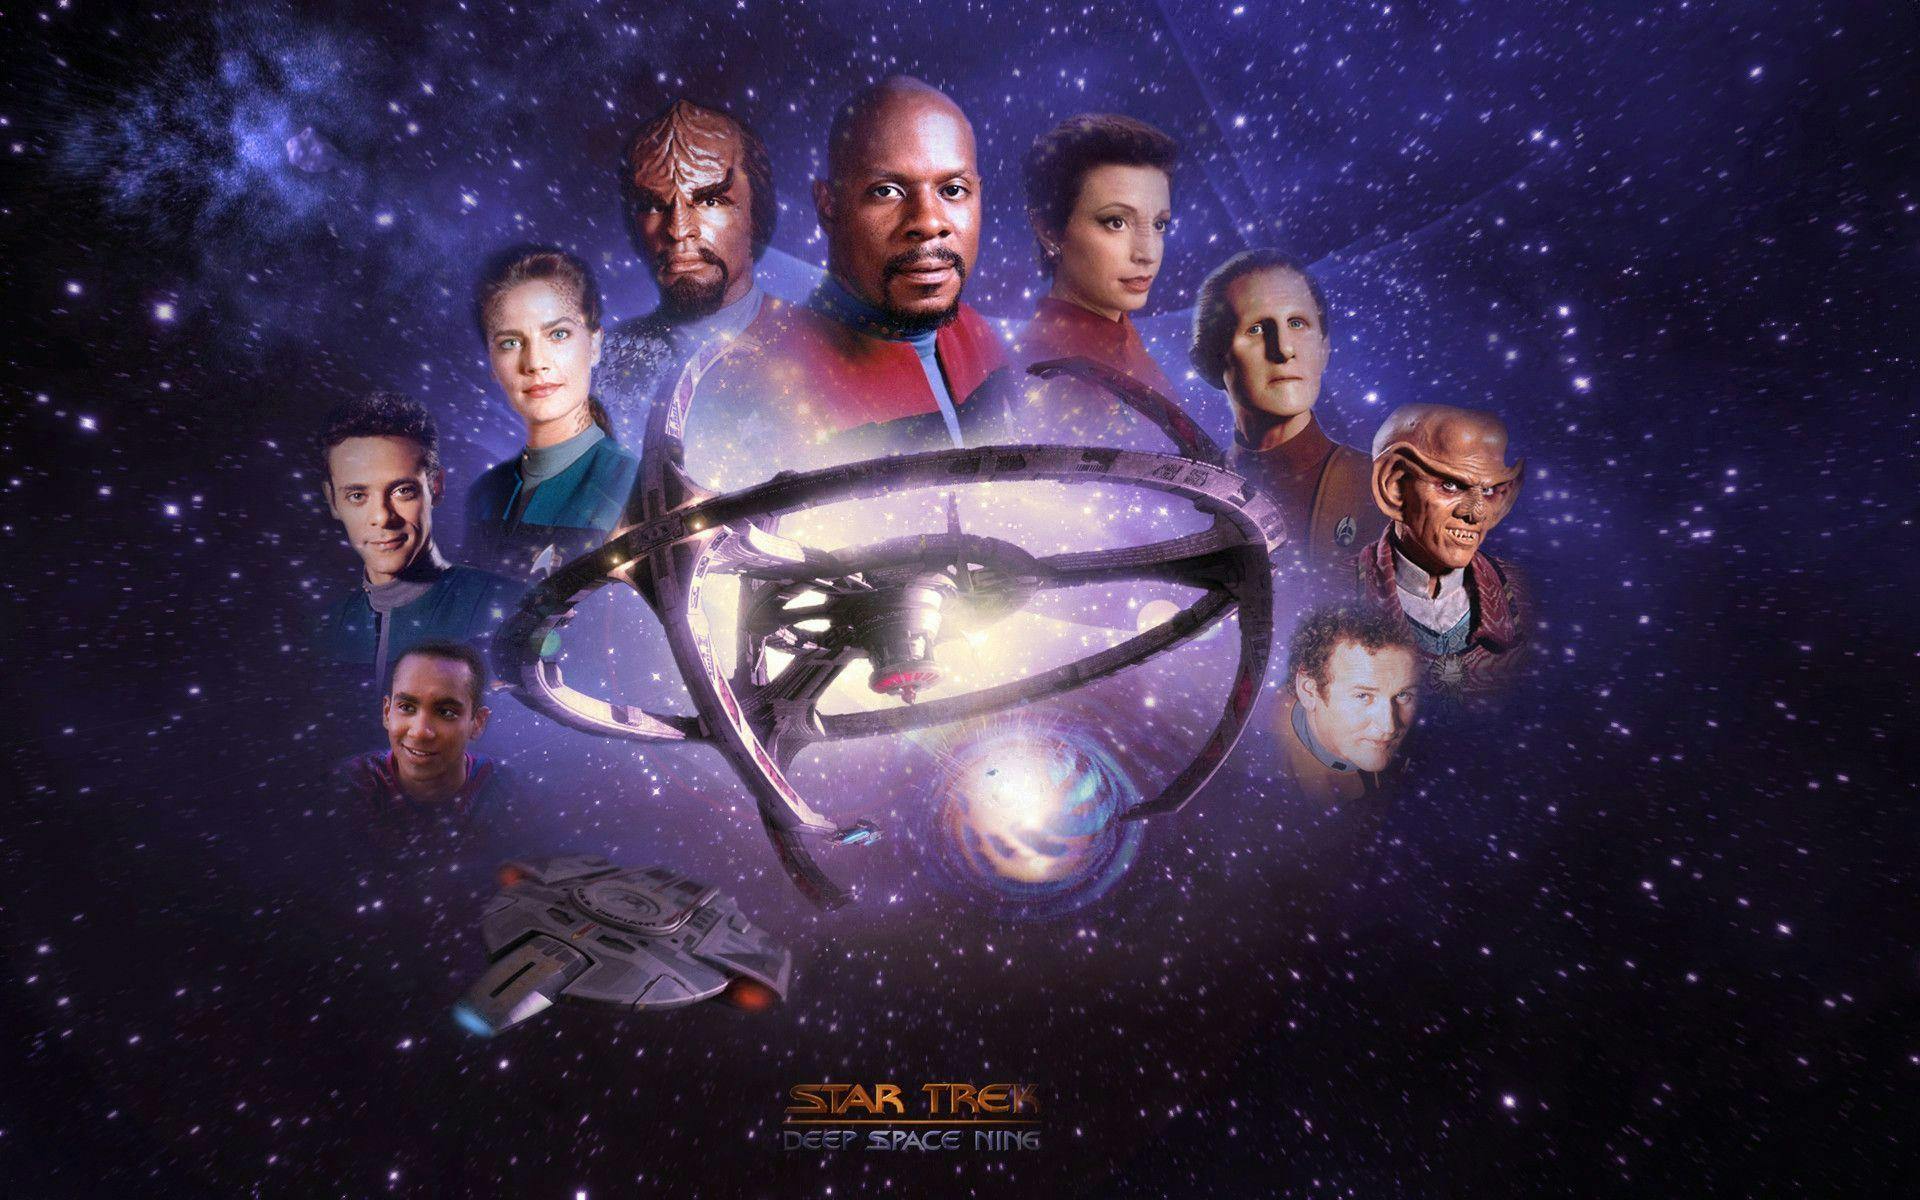 Star Trek: Deep Space Nine Watch Guide